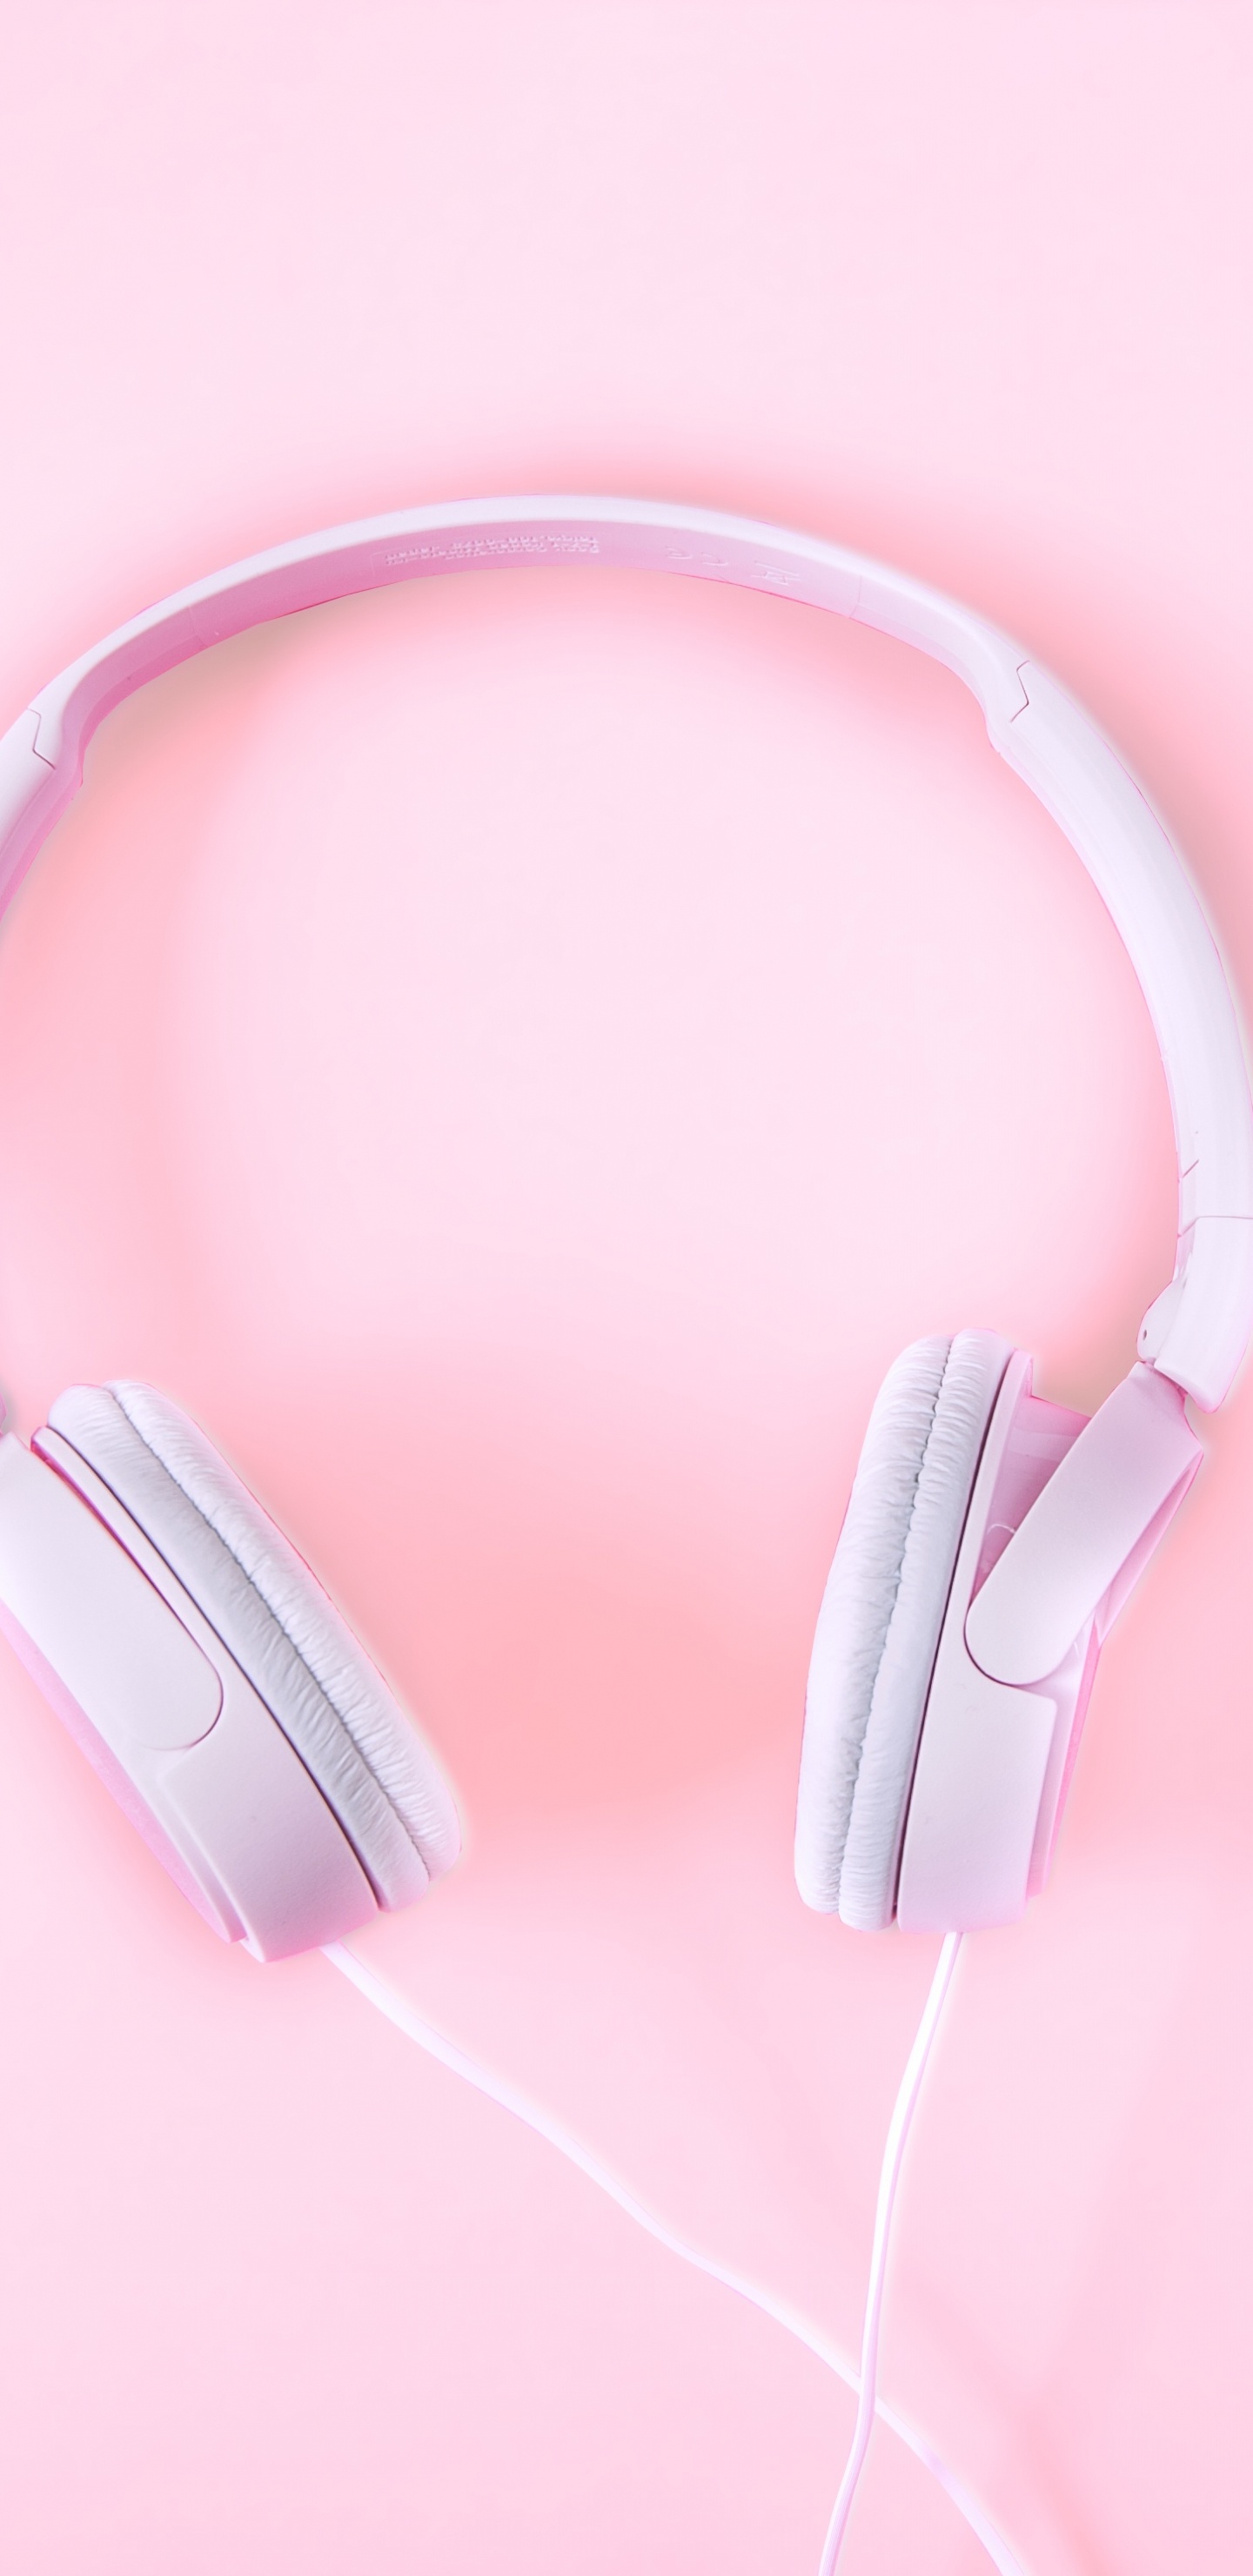 Kopfhörer, Pink, Audiogeräten, Gadget, Ohr. Wallpaper in 1440x2960 Resolution